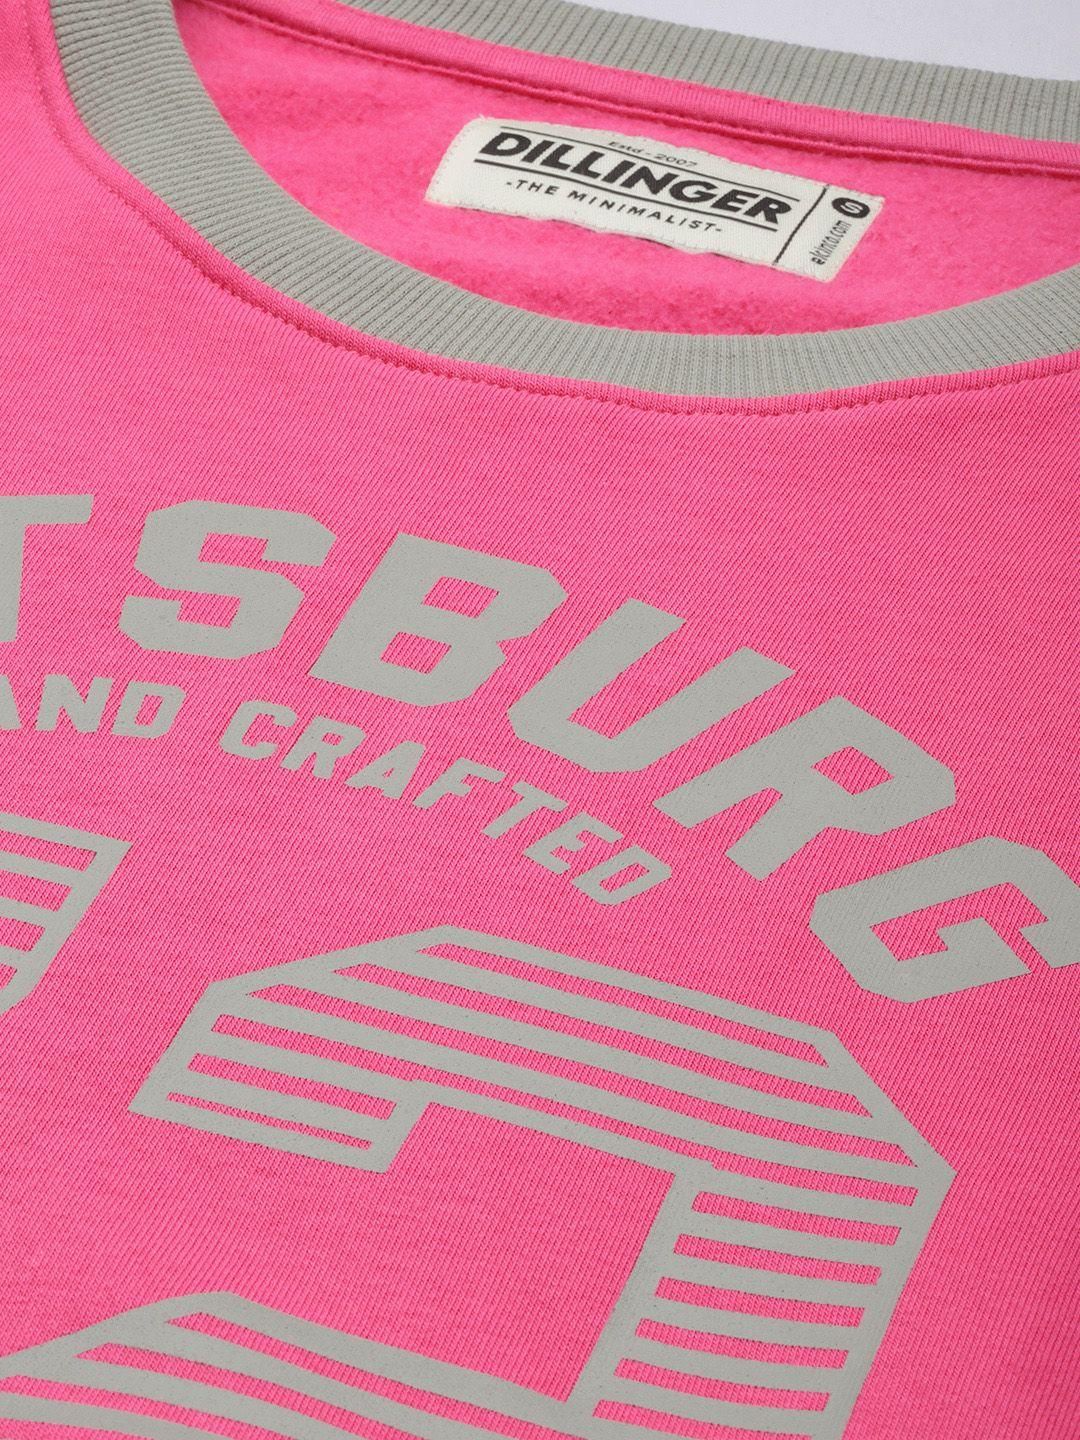 Dillinger Women's Pink Typographic Oversized Sweatshirt